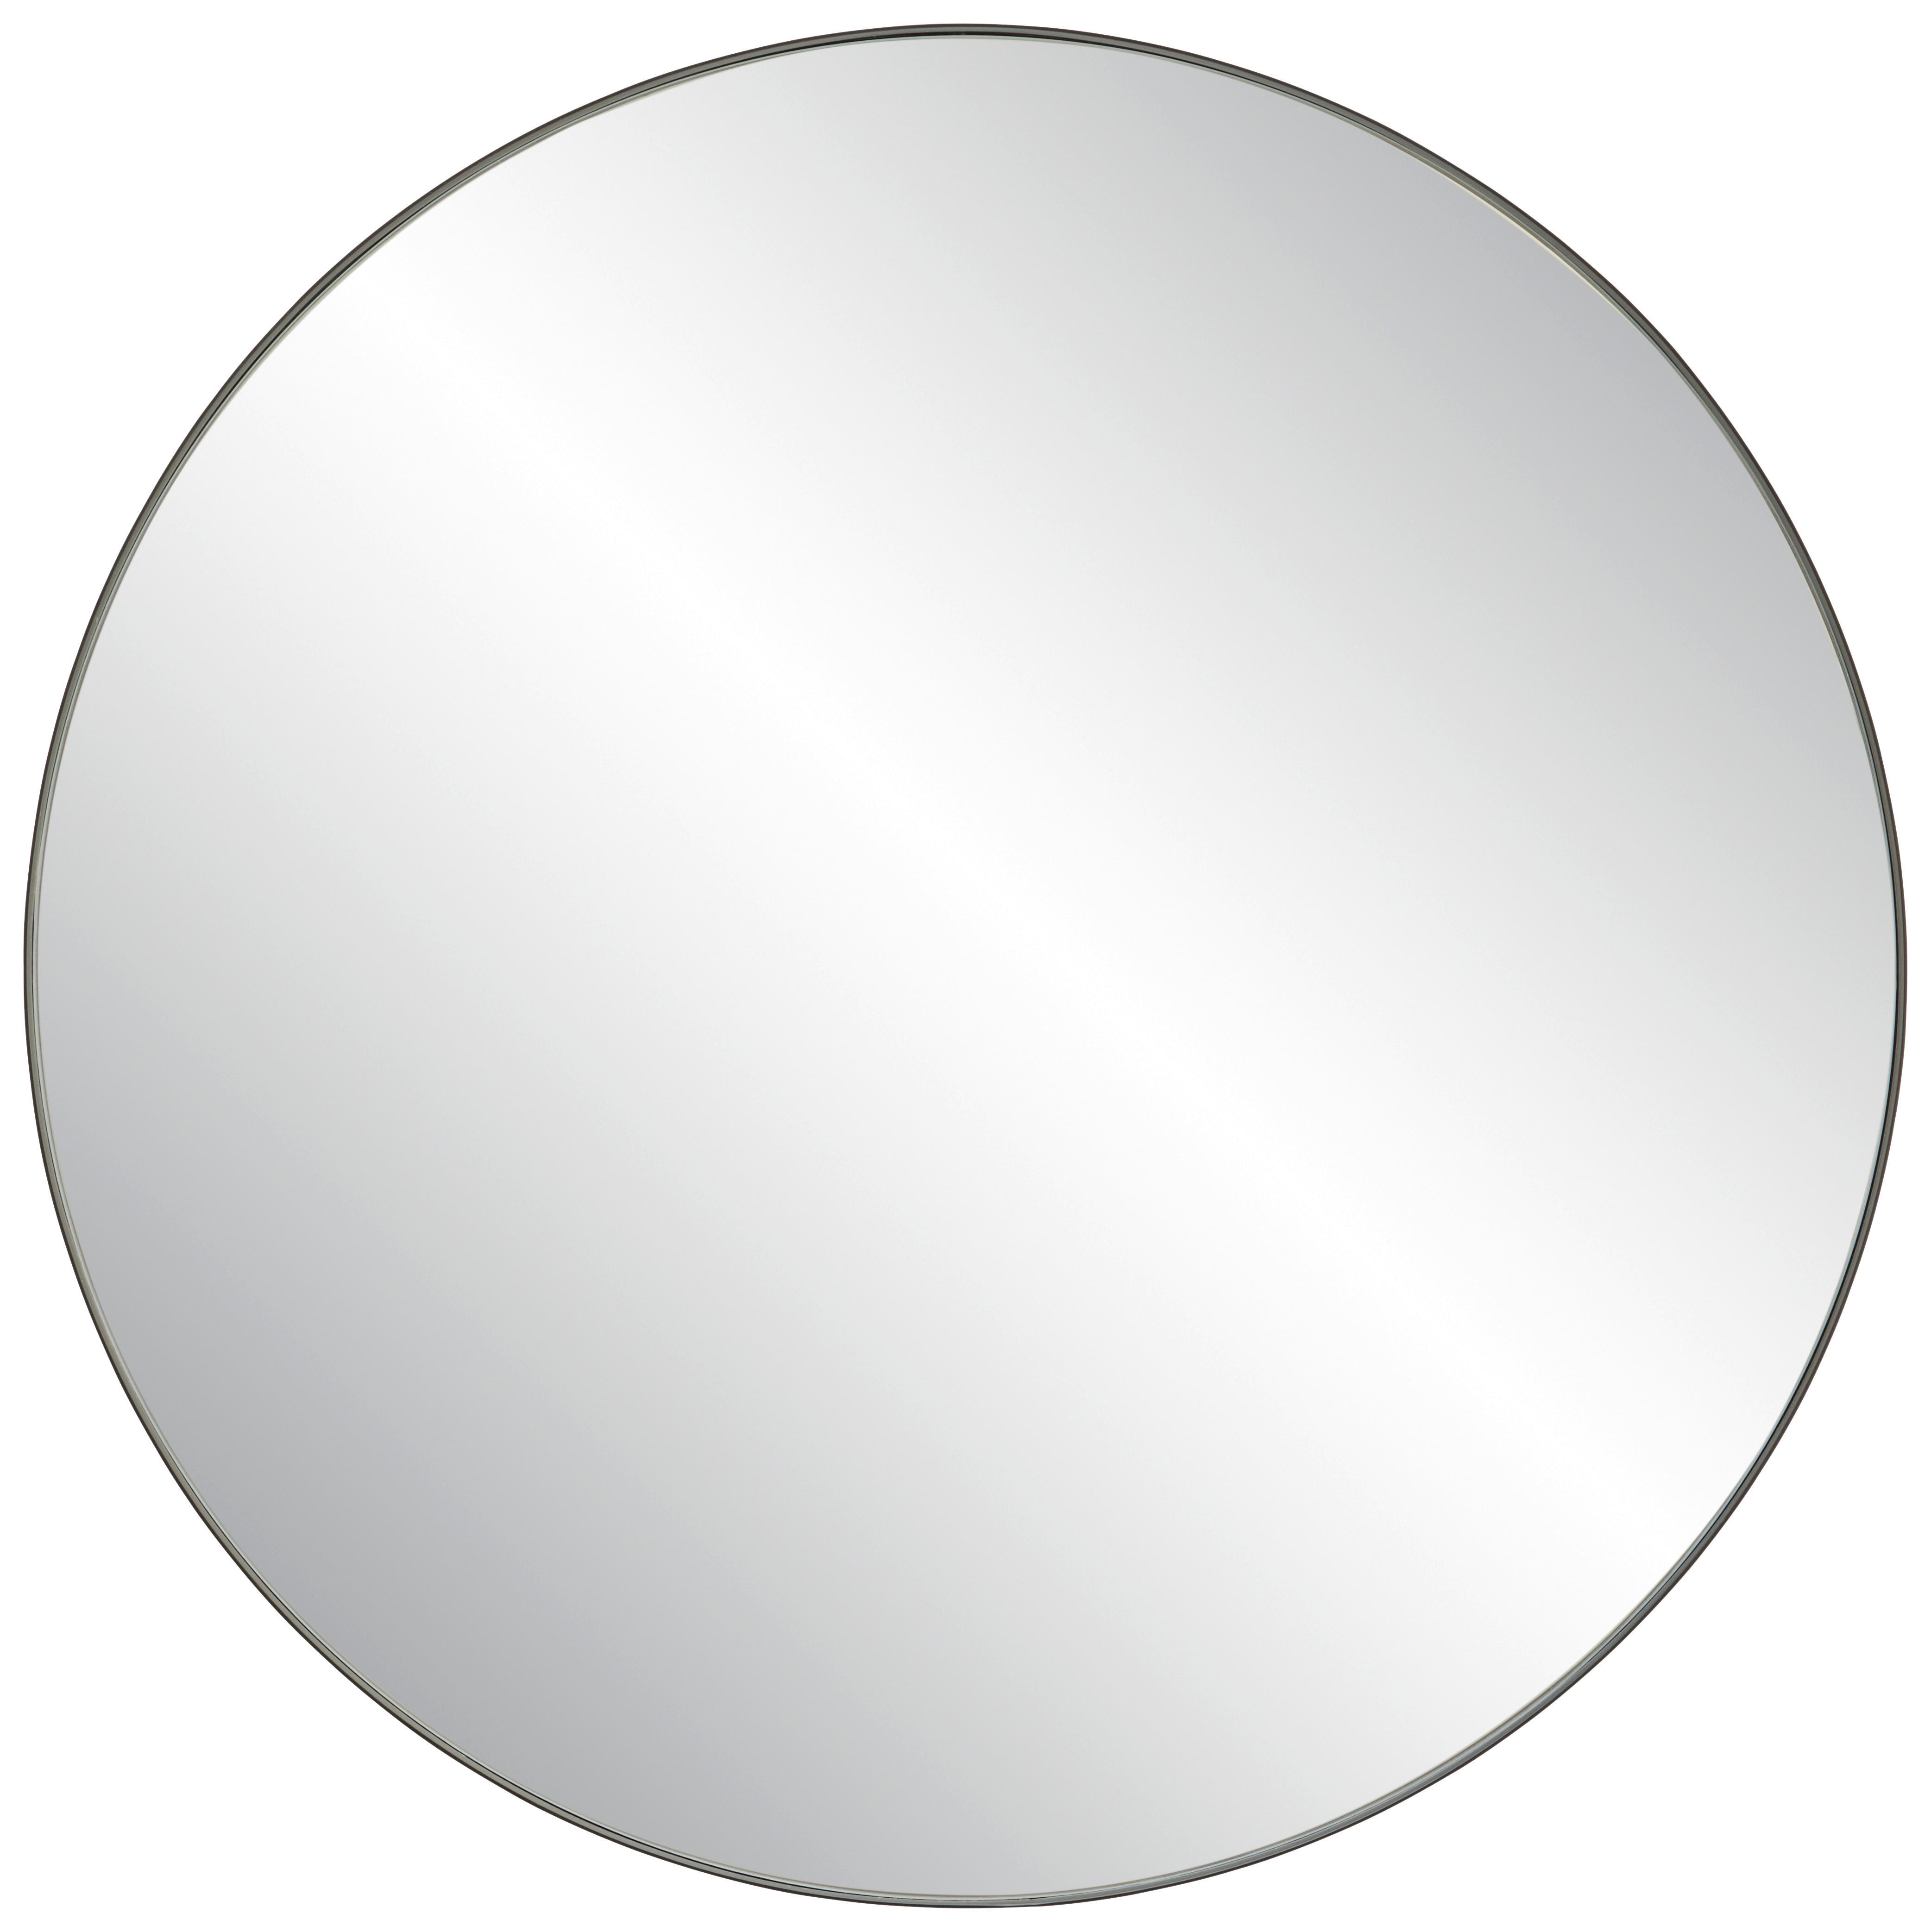 STENSKO OGLEDALO, 80/80/3,5 cm steklo  - črna, Trend, kovina/steklo (80/80/3,5cm) - Xora